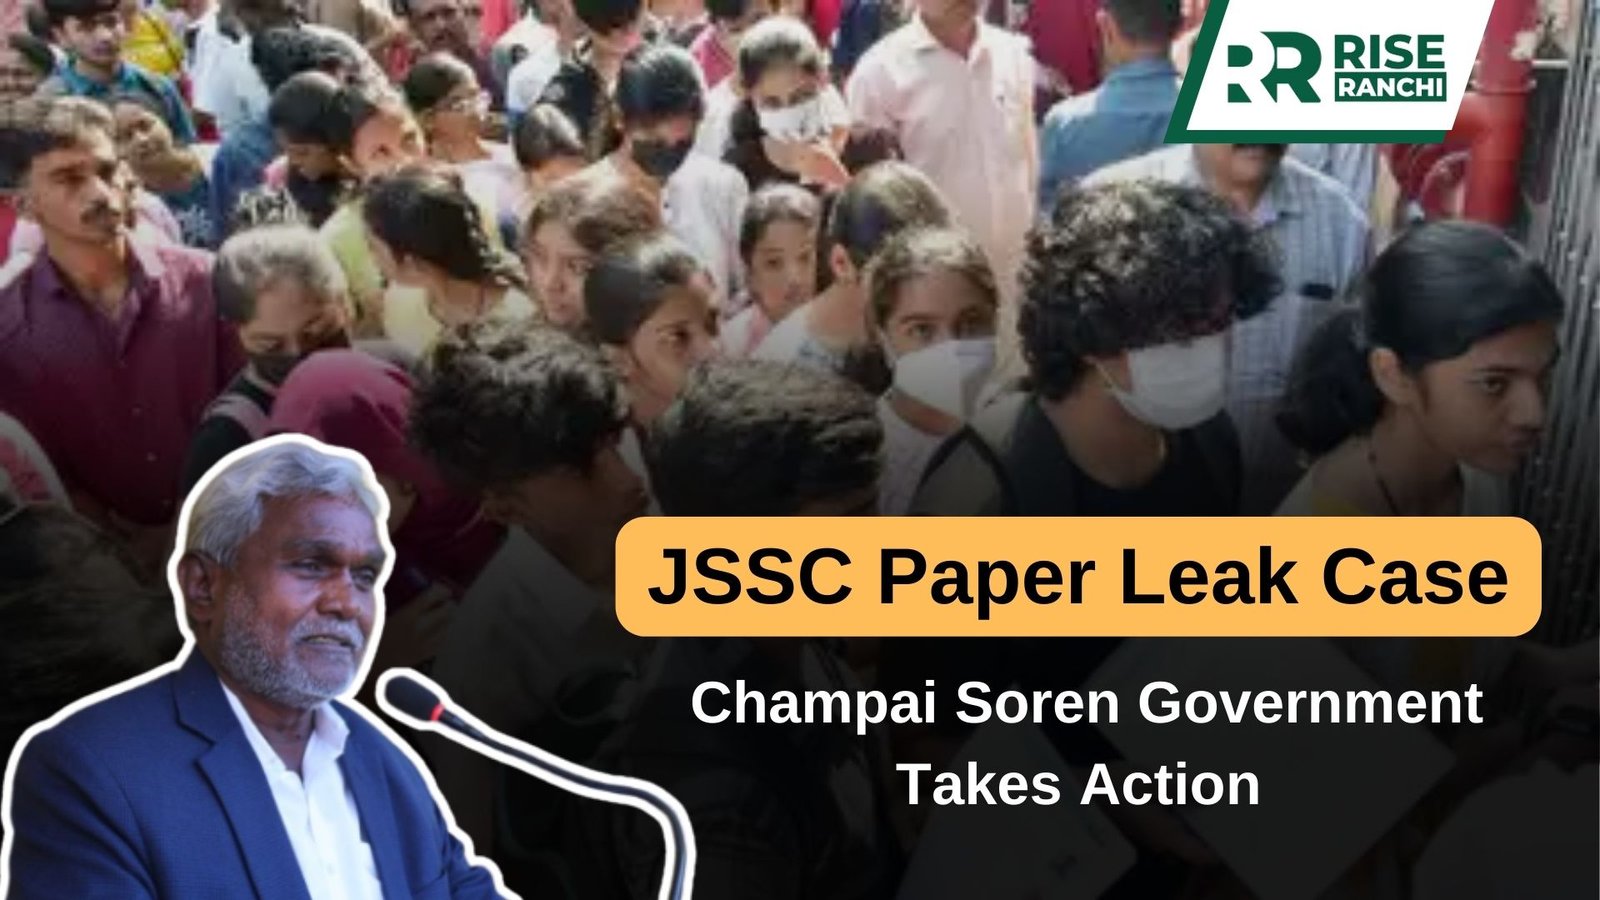 JSSC Paper Leak Case: Champai Soren Government Takes Action